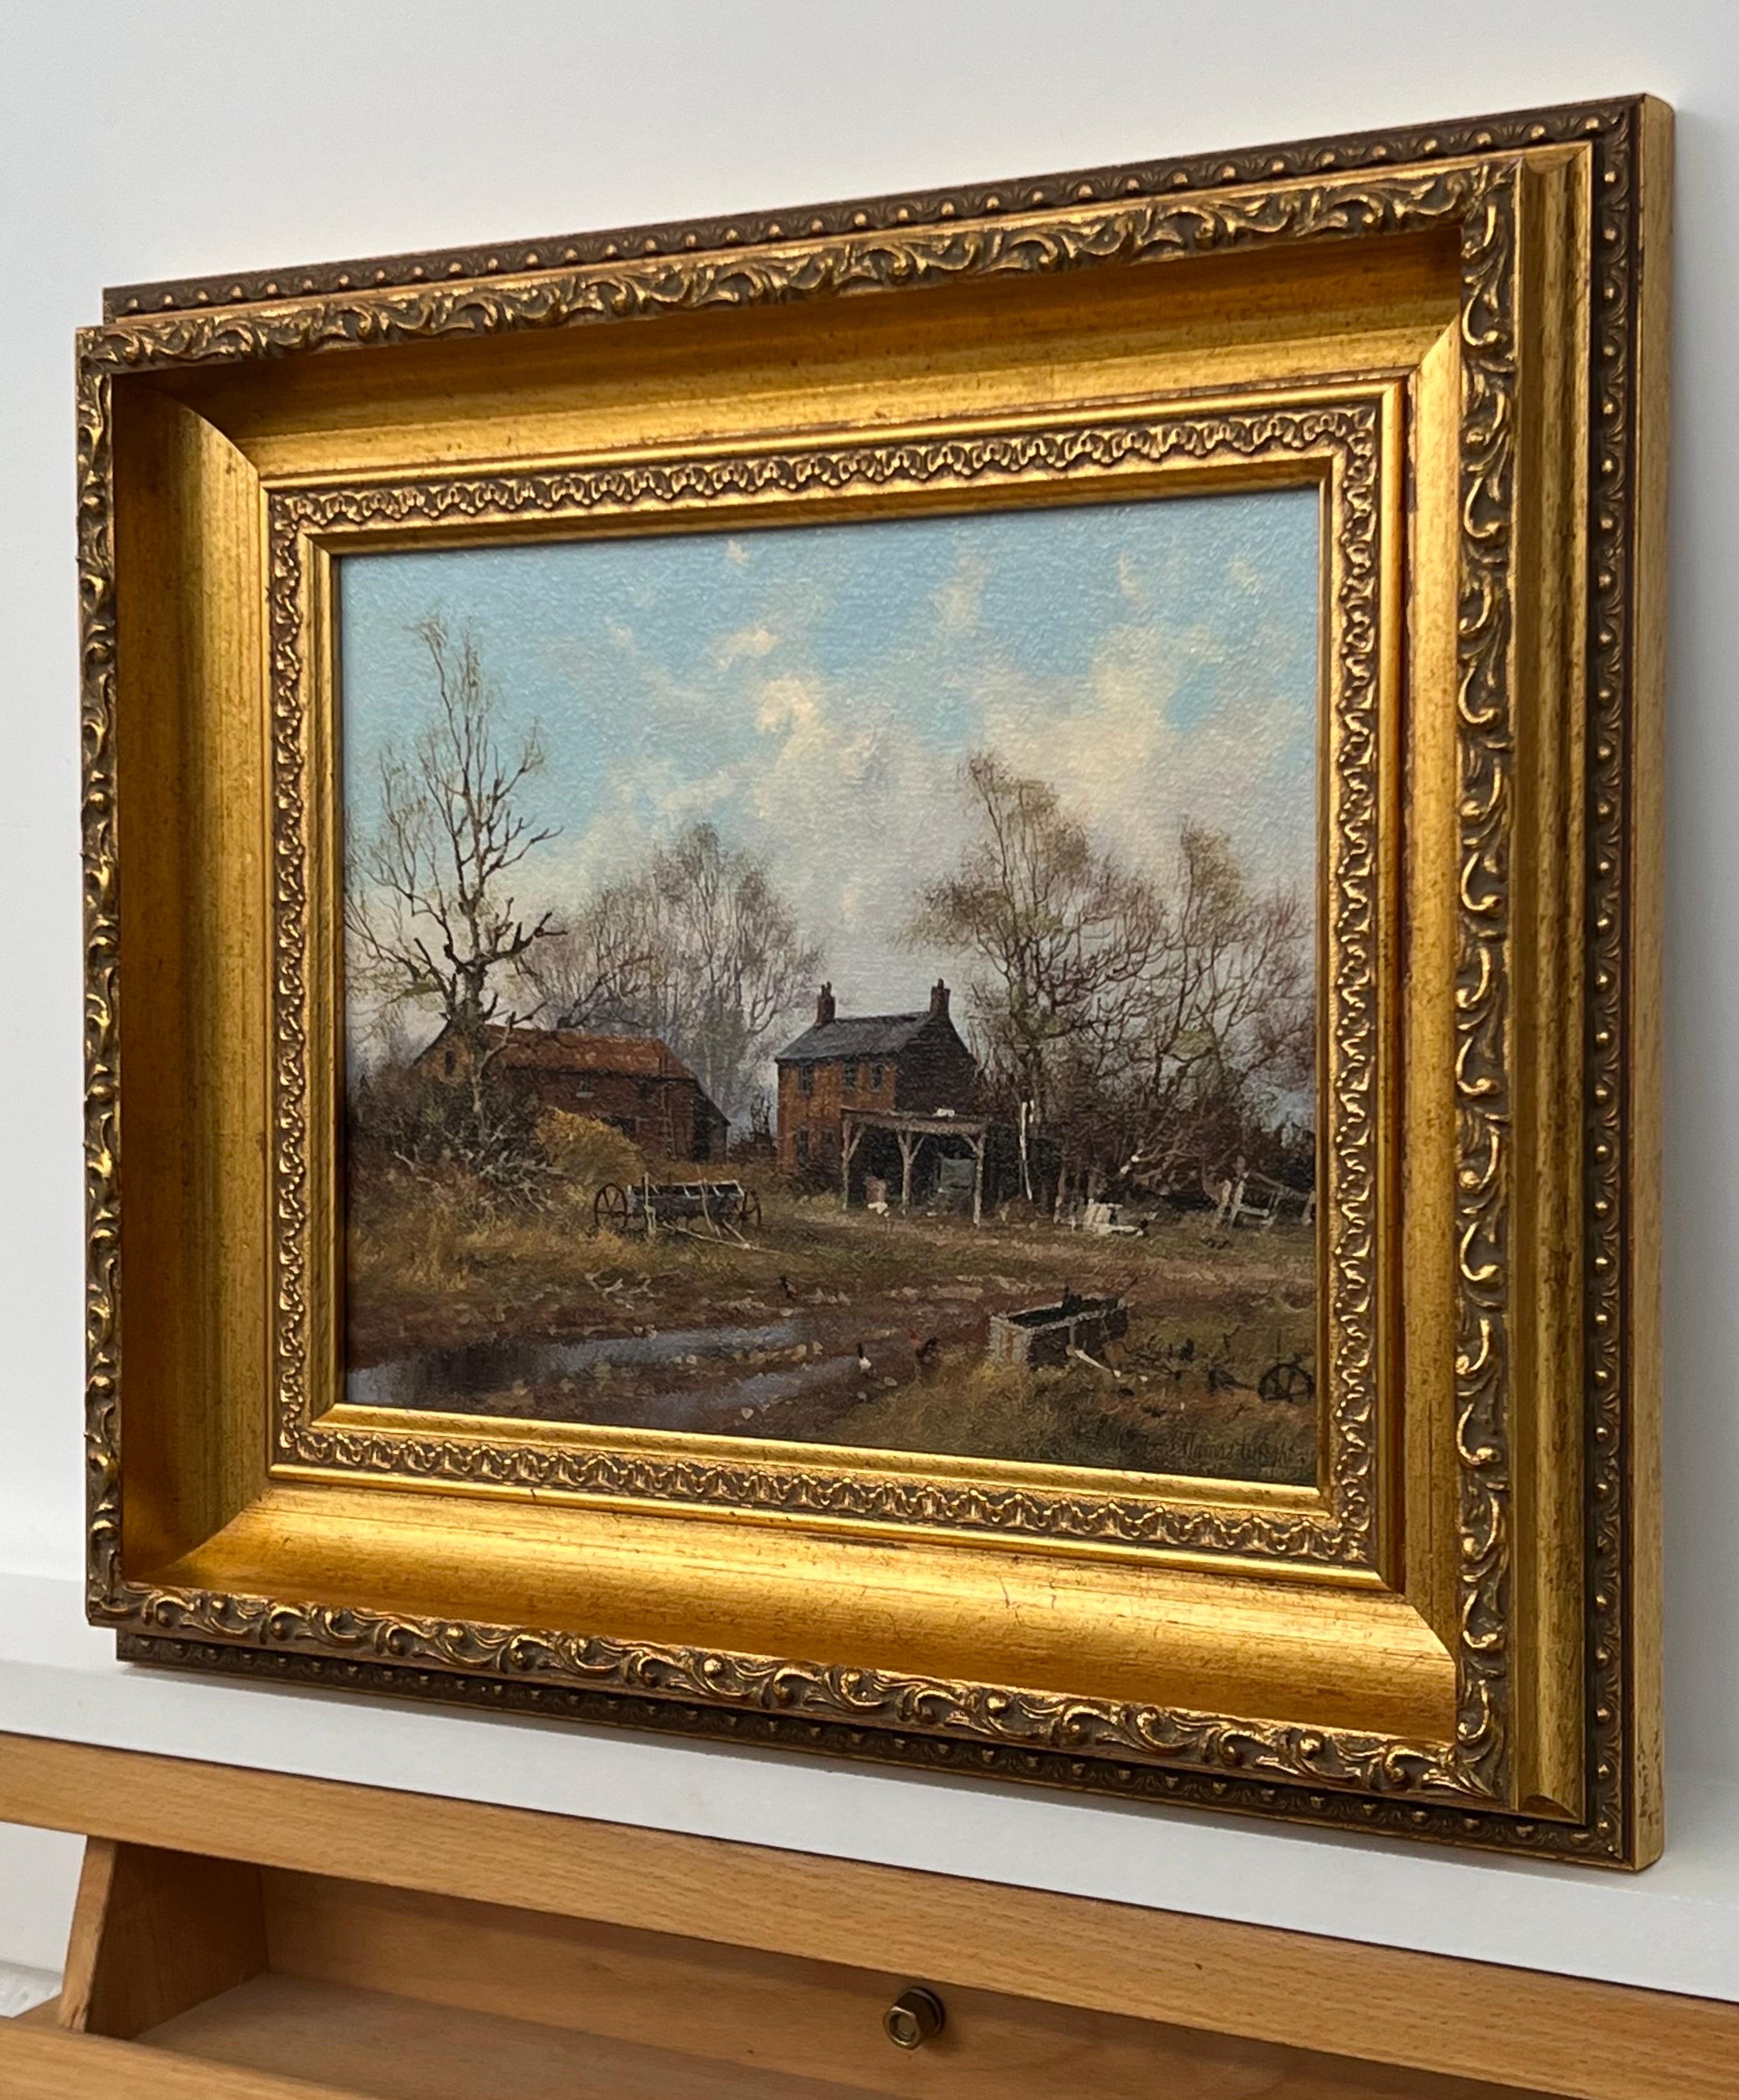 Gemälde eines Bauernhofs mit Gänsen in der englischen Landschaft vom britischen Künstler des 20. Jahrhunderts, James Wright 
Signiert, Original, Öl auf Leinwand, in einem schönen verschnörkelten Goldrahmen untergebracht. 
Provenienz: Teil der